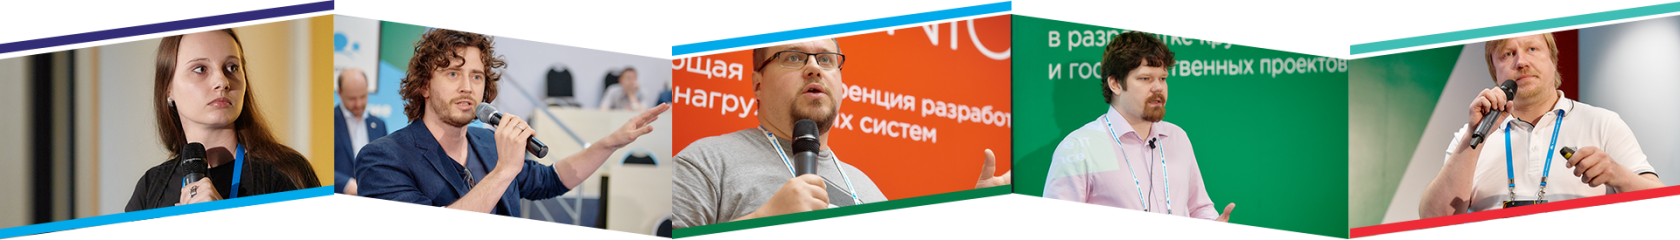 Фестиваль «Российские интернет-технологии» приглашает докладчиков - 2